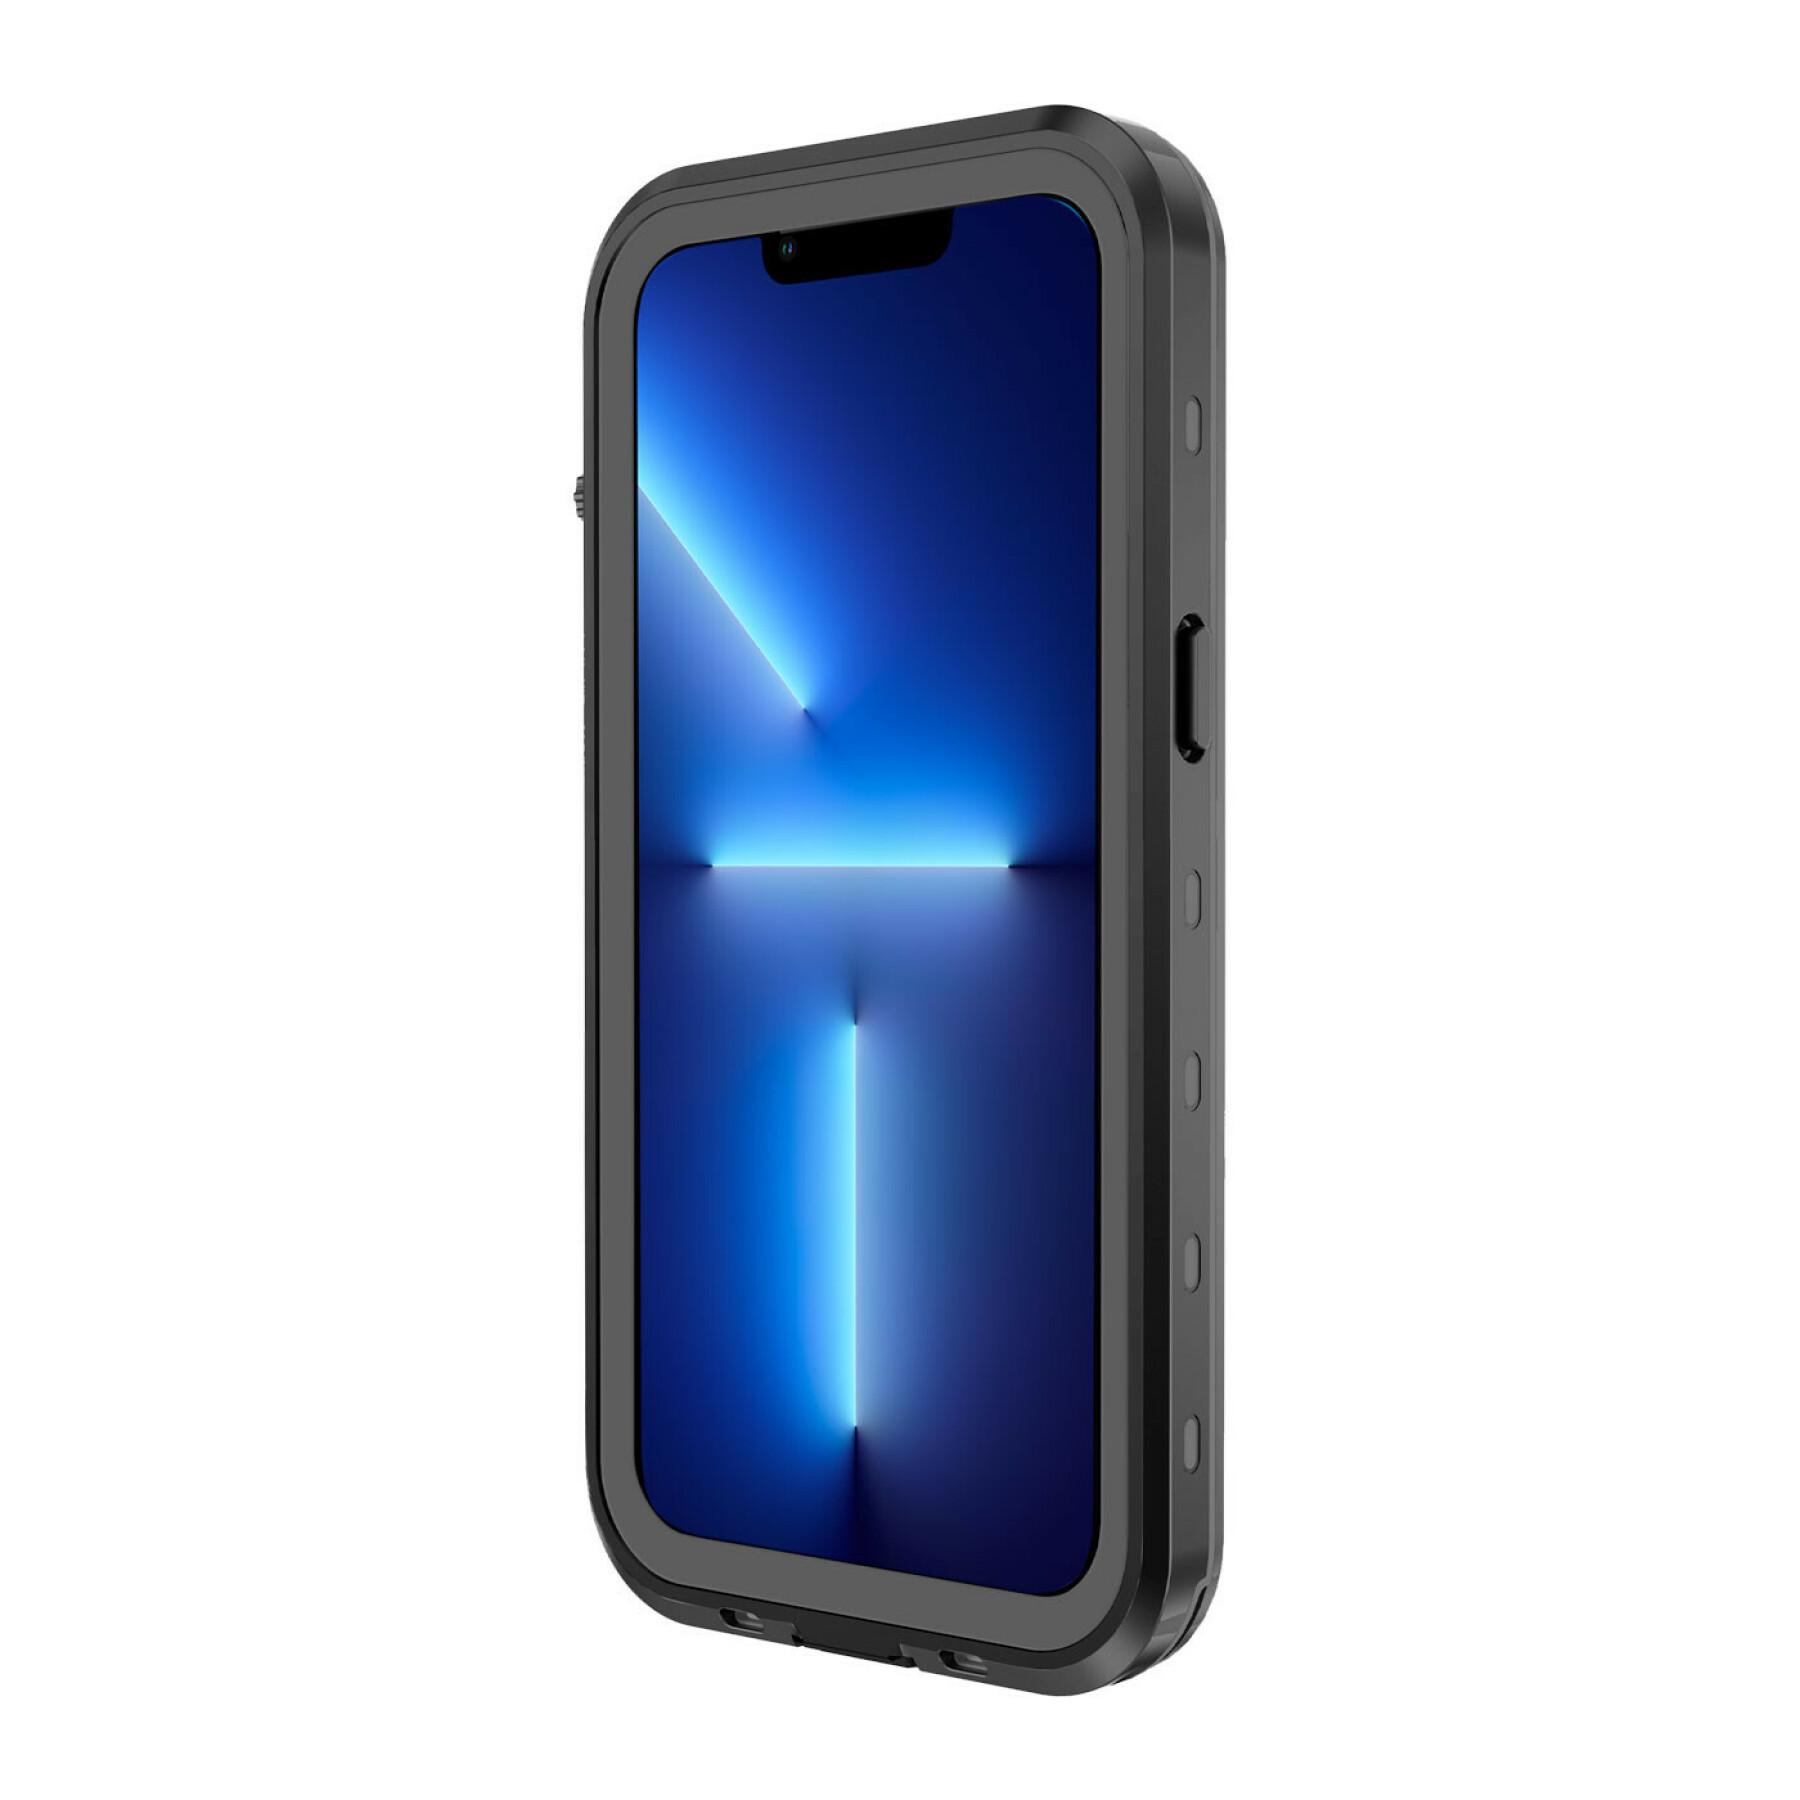 iphone 13 pro caixa para smartphone à prova de água e choque CaseProof